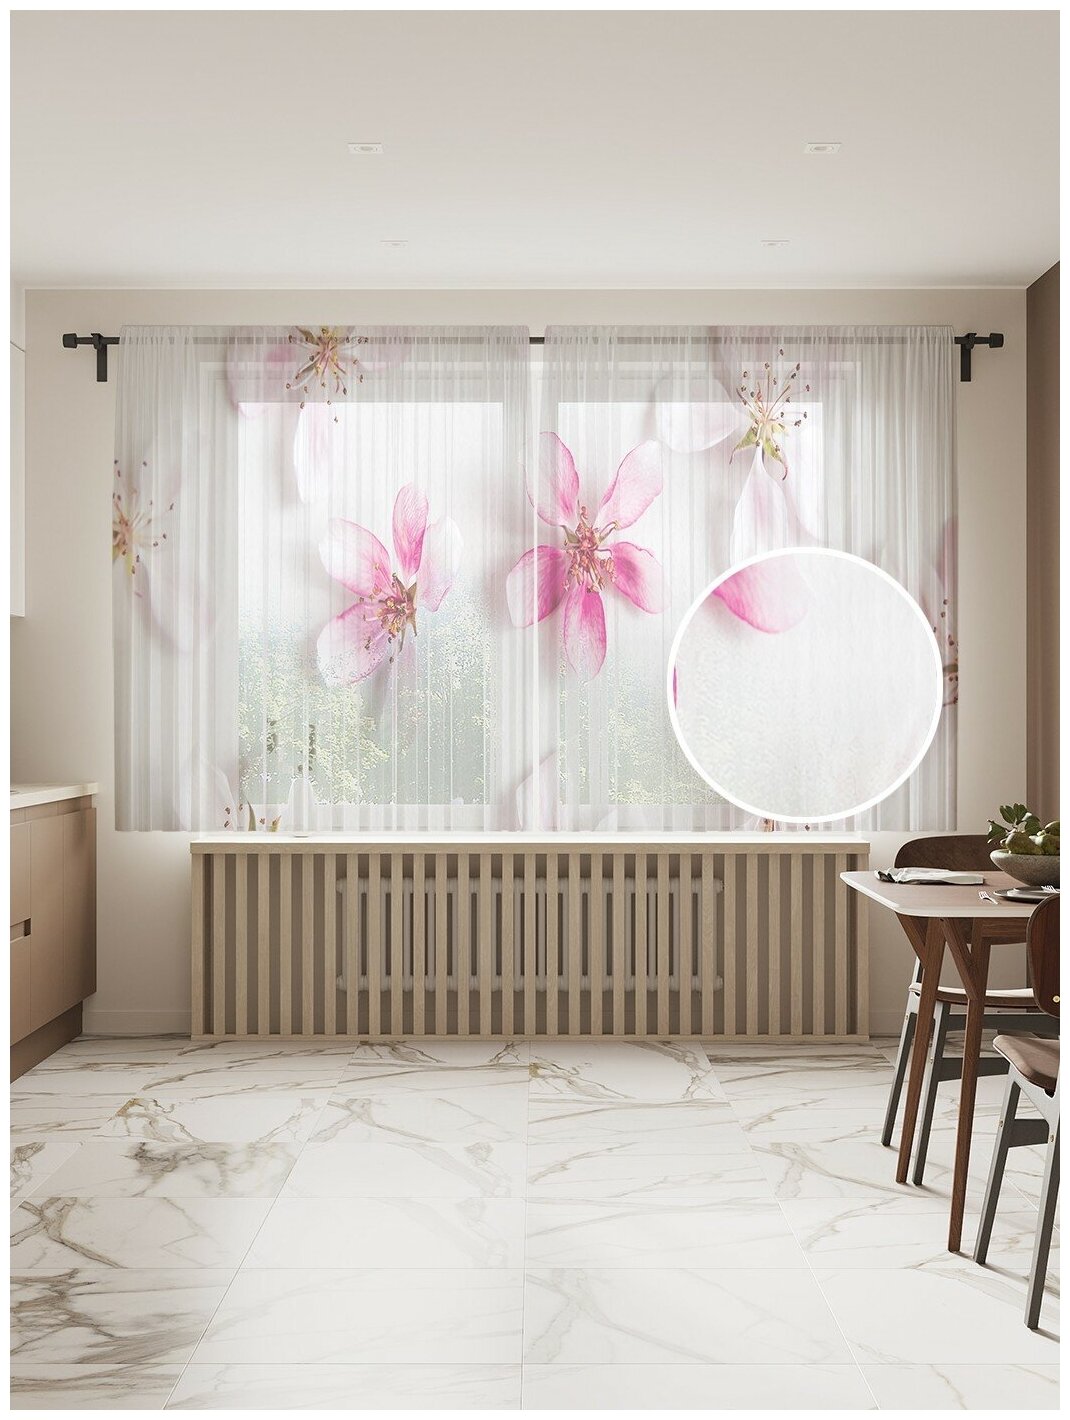 Фототюль JoyArty "Симметричные цветы сакуры", 145x180 см (2 полотна со шторной лентой + 50 крючков)